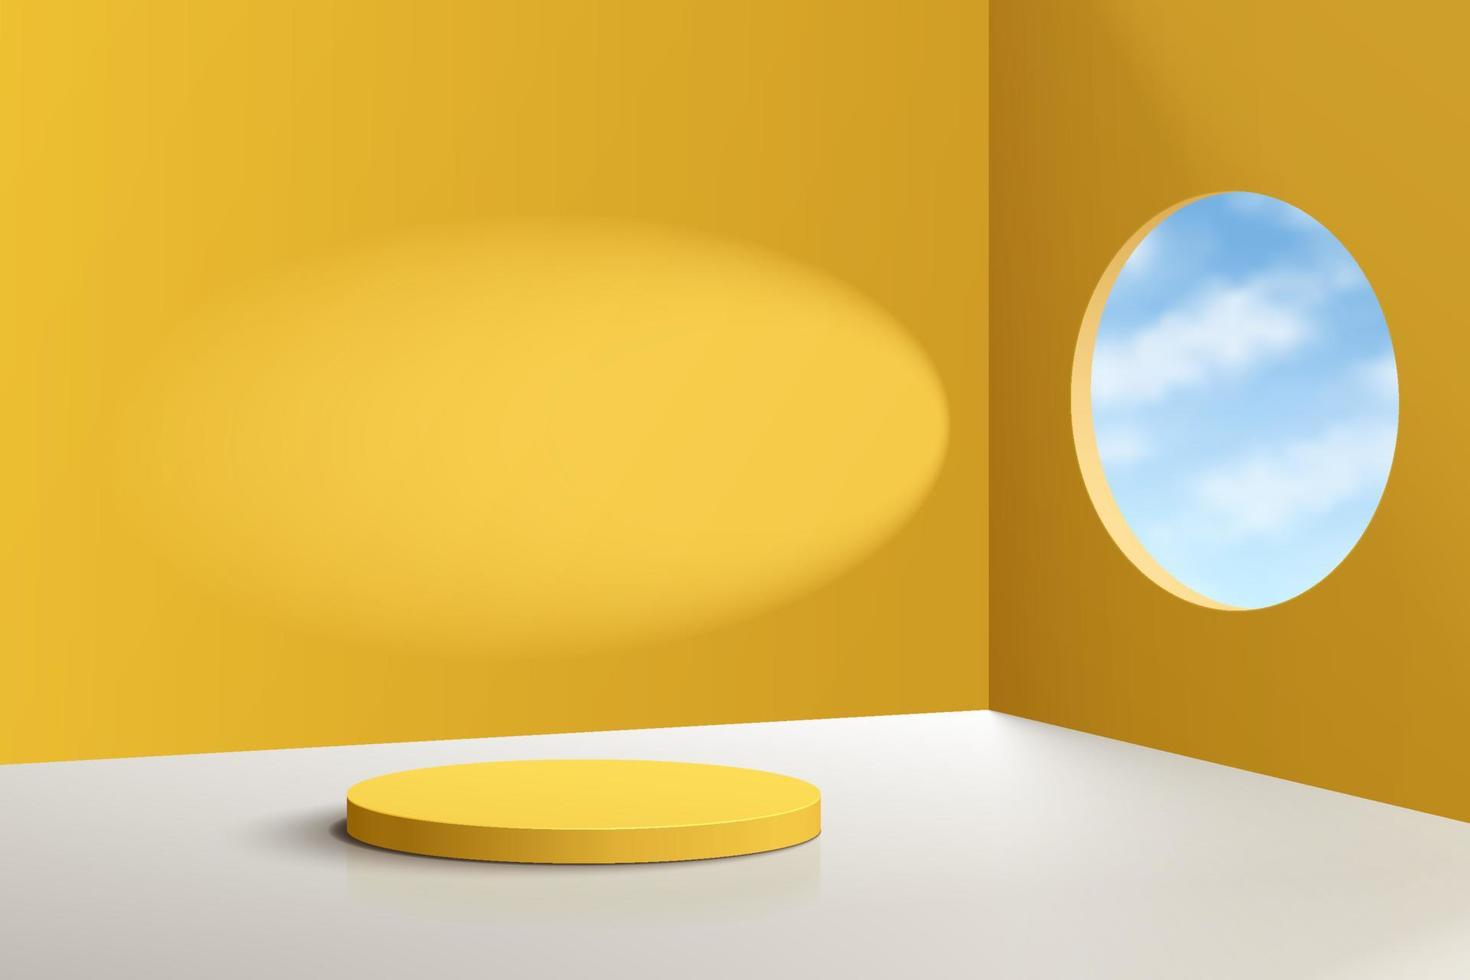 podium de piédestal de cylindre 3d réaliste jaune avec ciel bleu dans la fenêtre du cercle. scène minimale pastel pour vitrine de produits, affichage de promotion. salle de studio abstraite de vecteur avec un design de plate-forme géométrique.